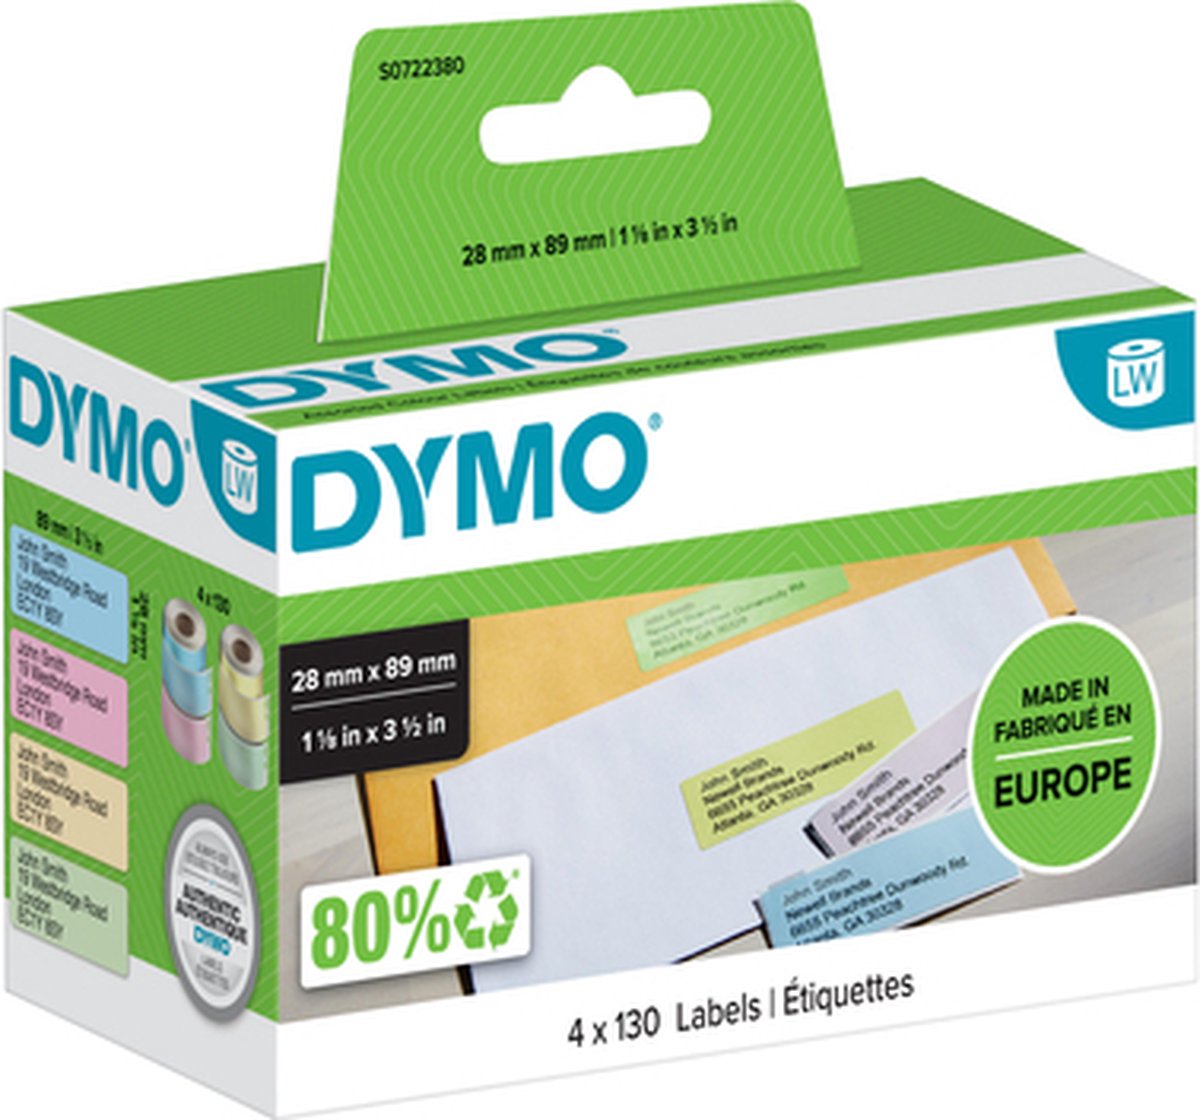 Label etiket dymo 99011 28mmx89mm adres assorti | Doos a 4 rol | 6 stuks